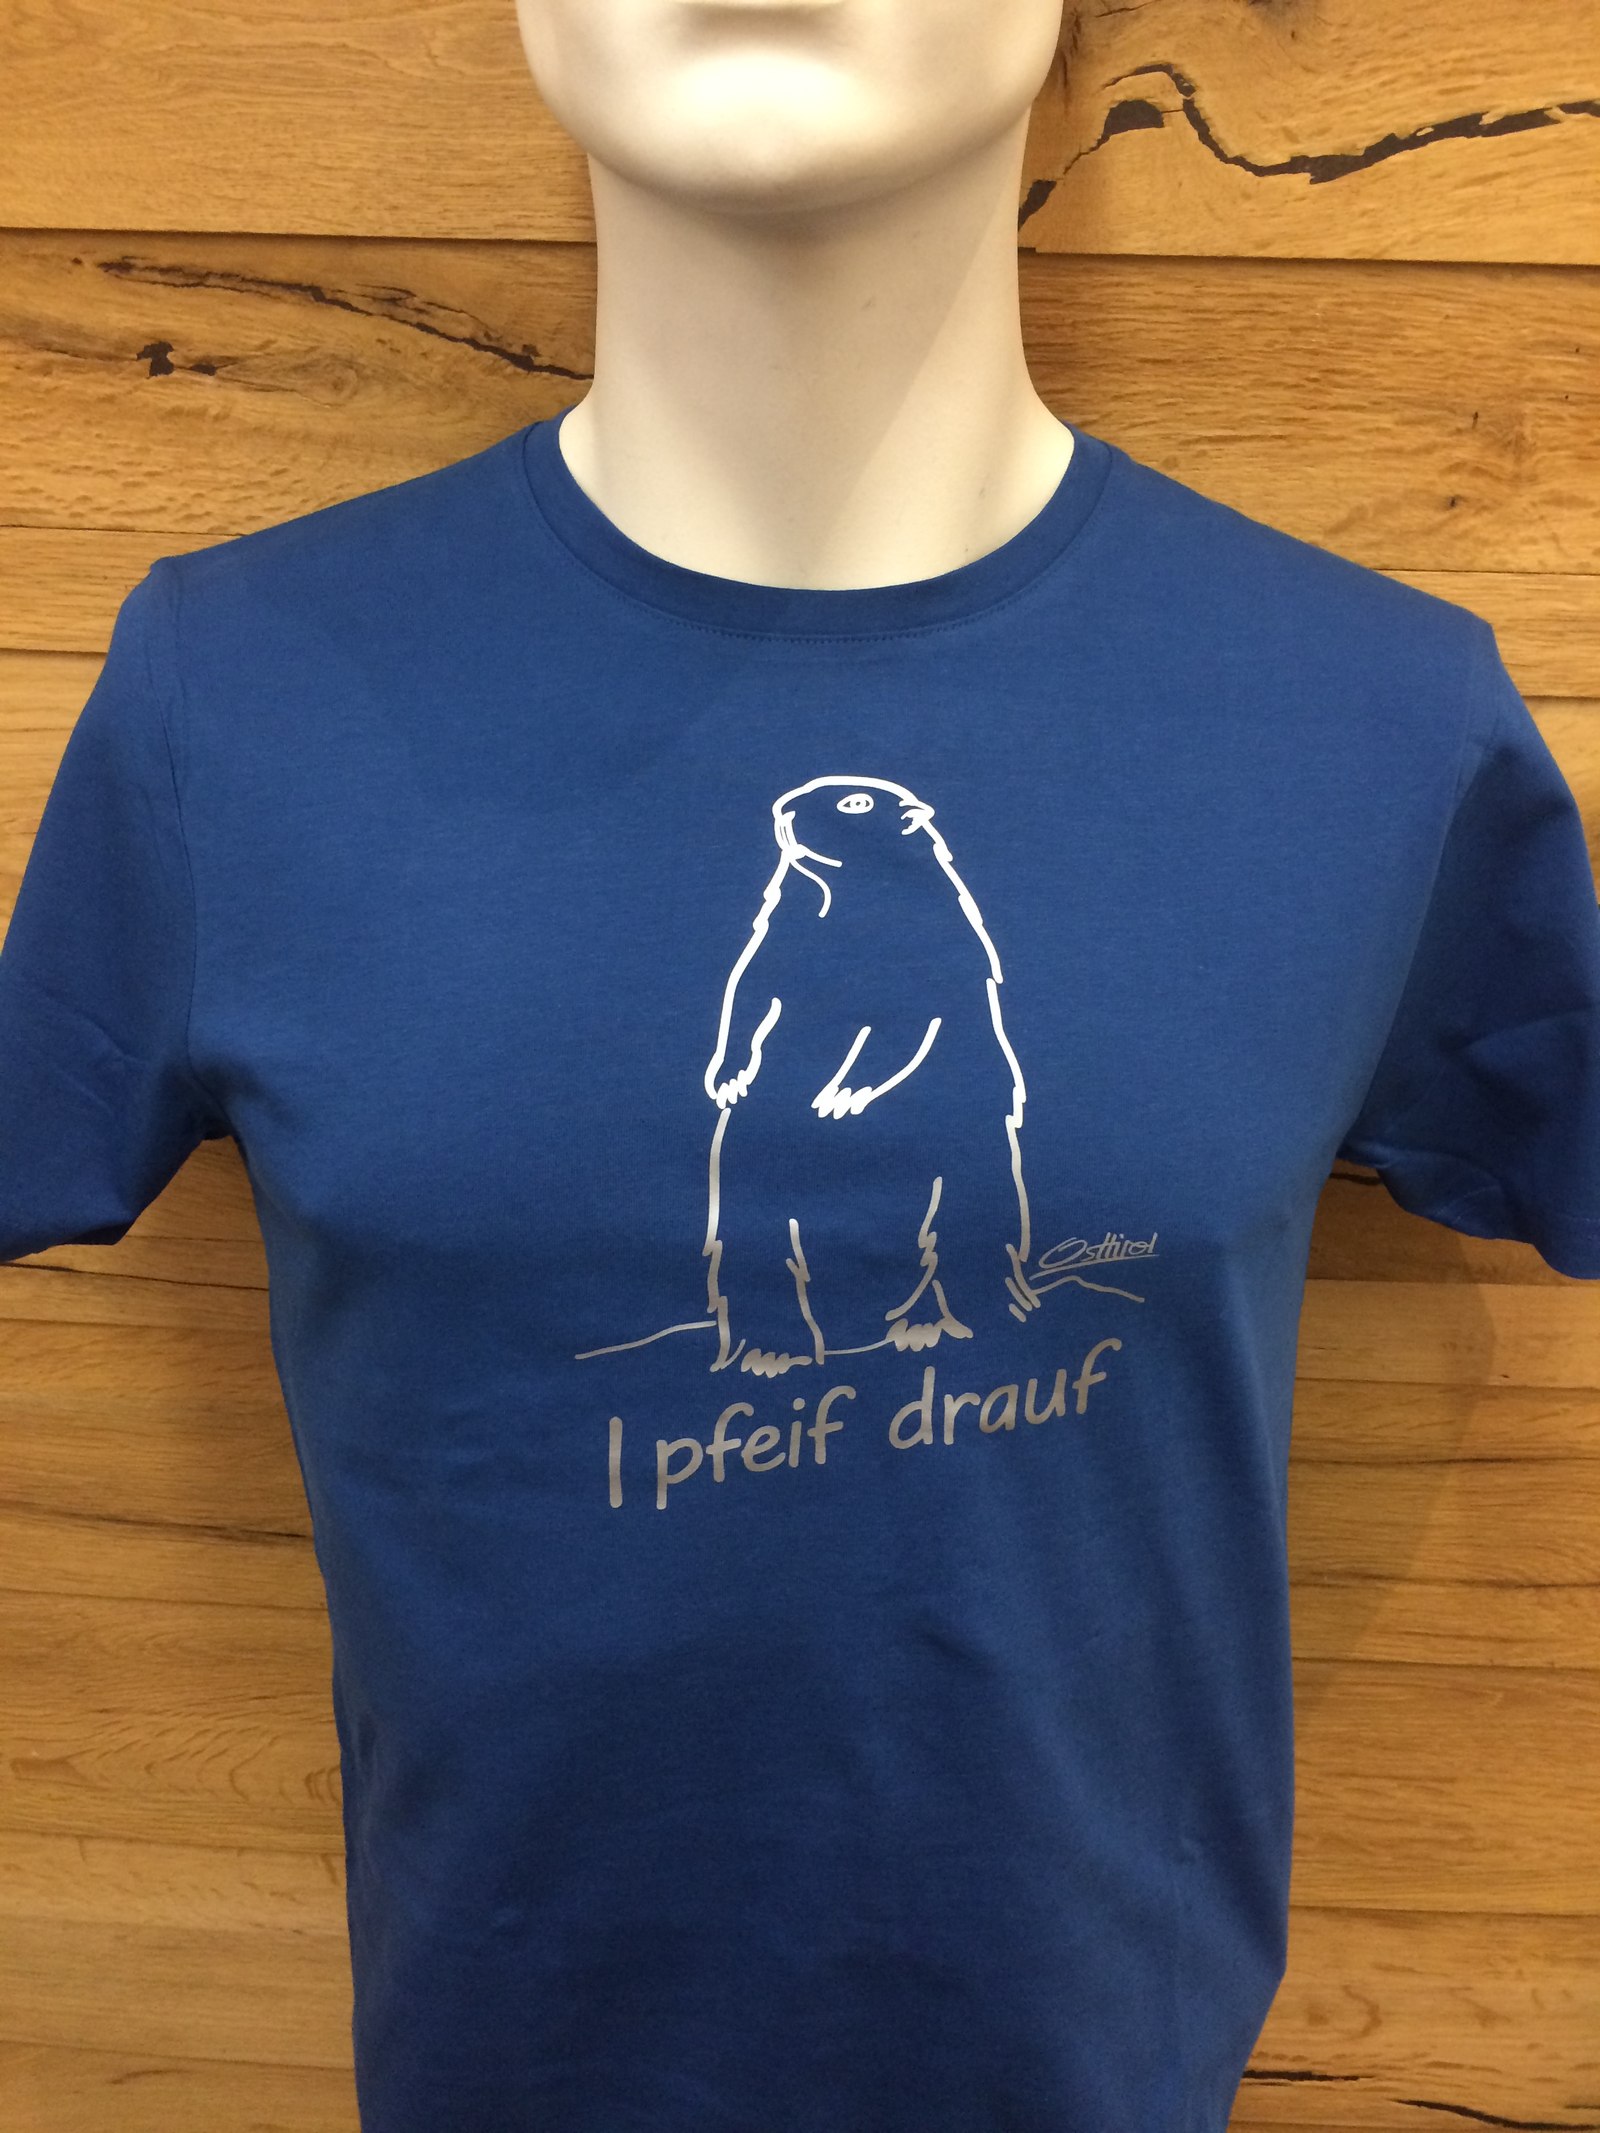 Herren T-Shirt "I pfeif drauf" marine